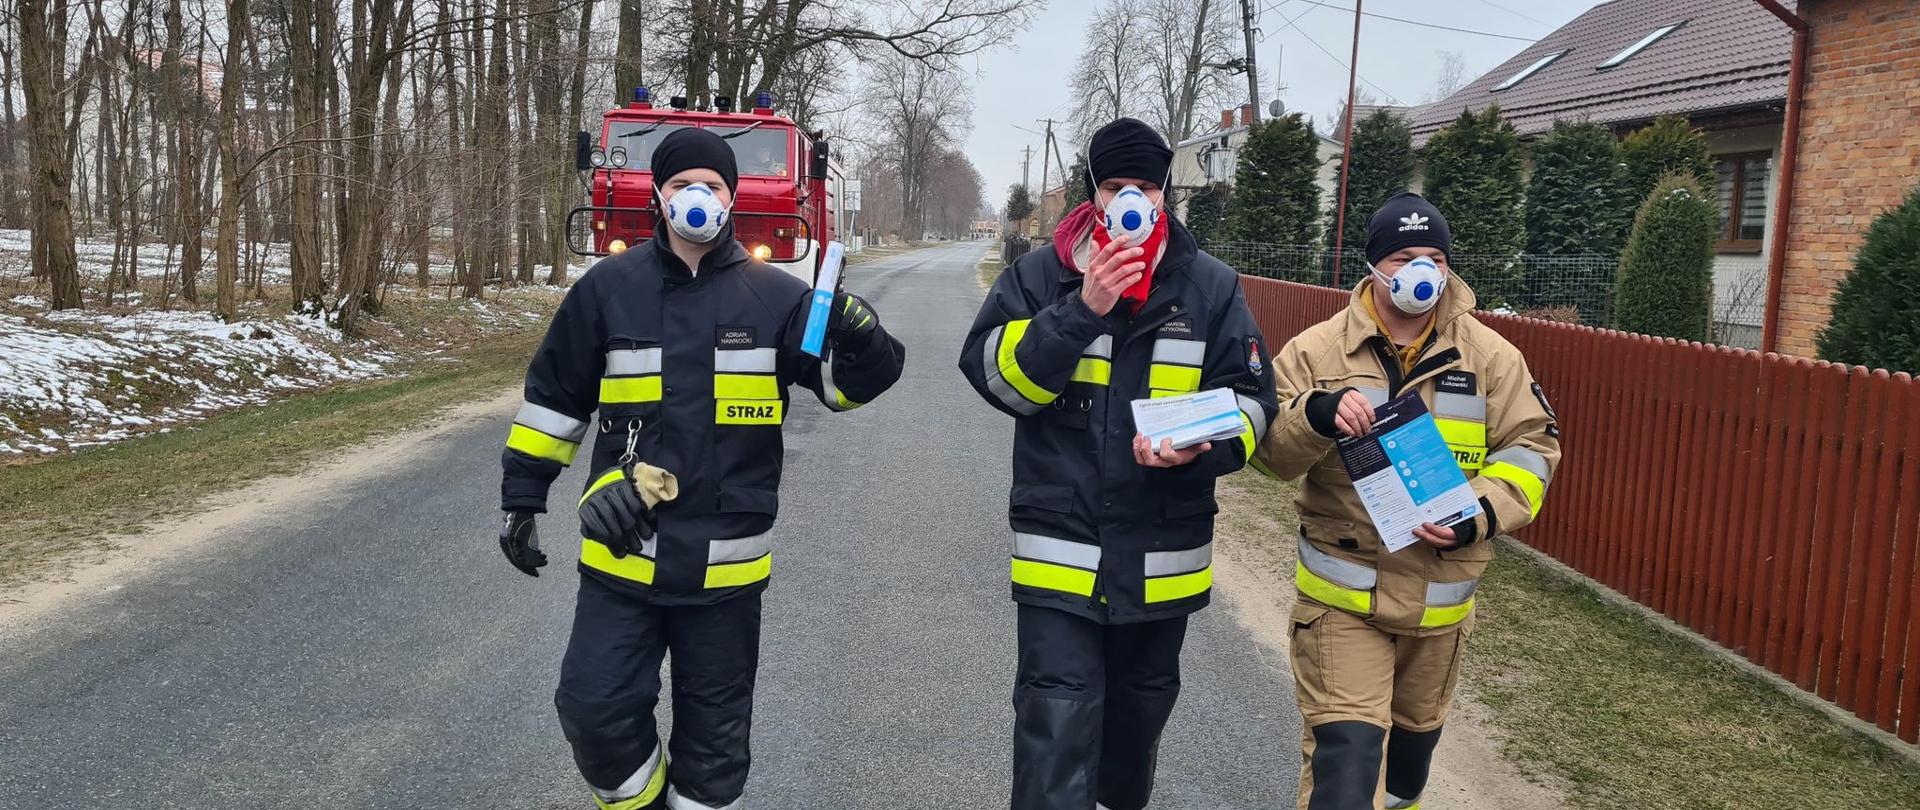 Zdjęcie przedstawia trzech strażaków ochotniczej straży pożarnej w umundurowaniu specjalnym i maseczkach na twarzy idących drogą i trzymających w ręku ulotki. Z tyłu za strażakami jedzie samochód ratowniczo - gaśniczy.